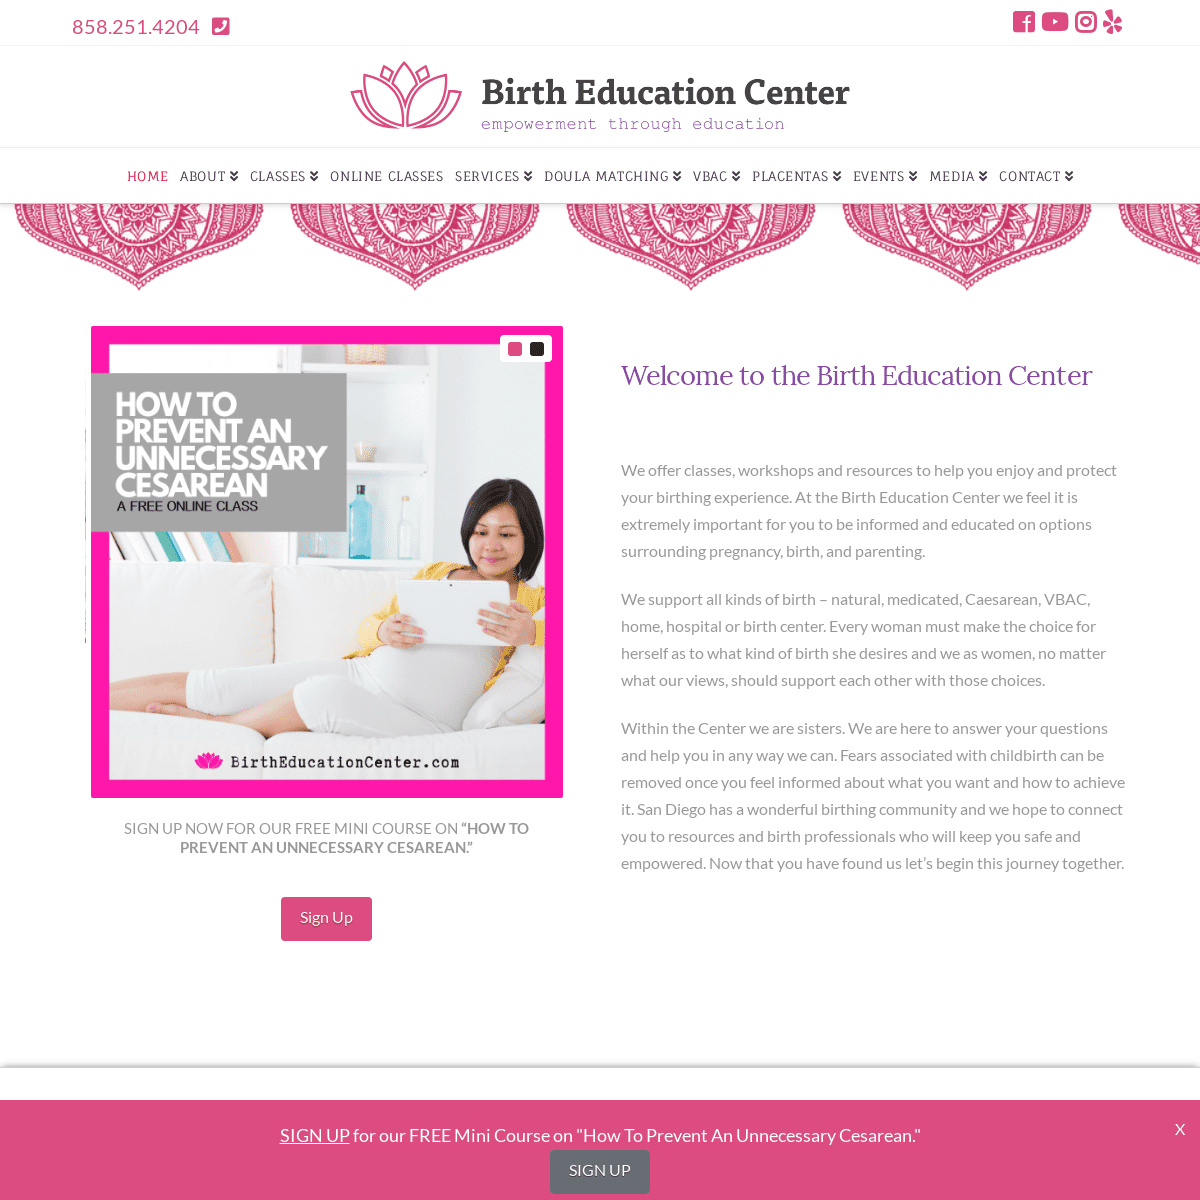 A complete backup of birtheducationcenter.com